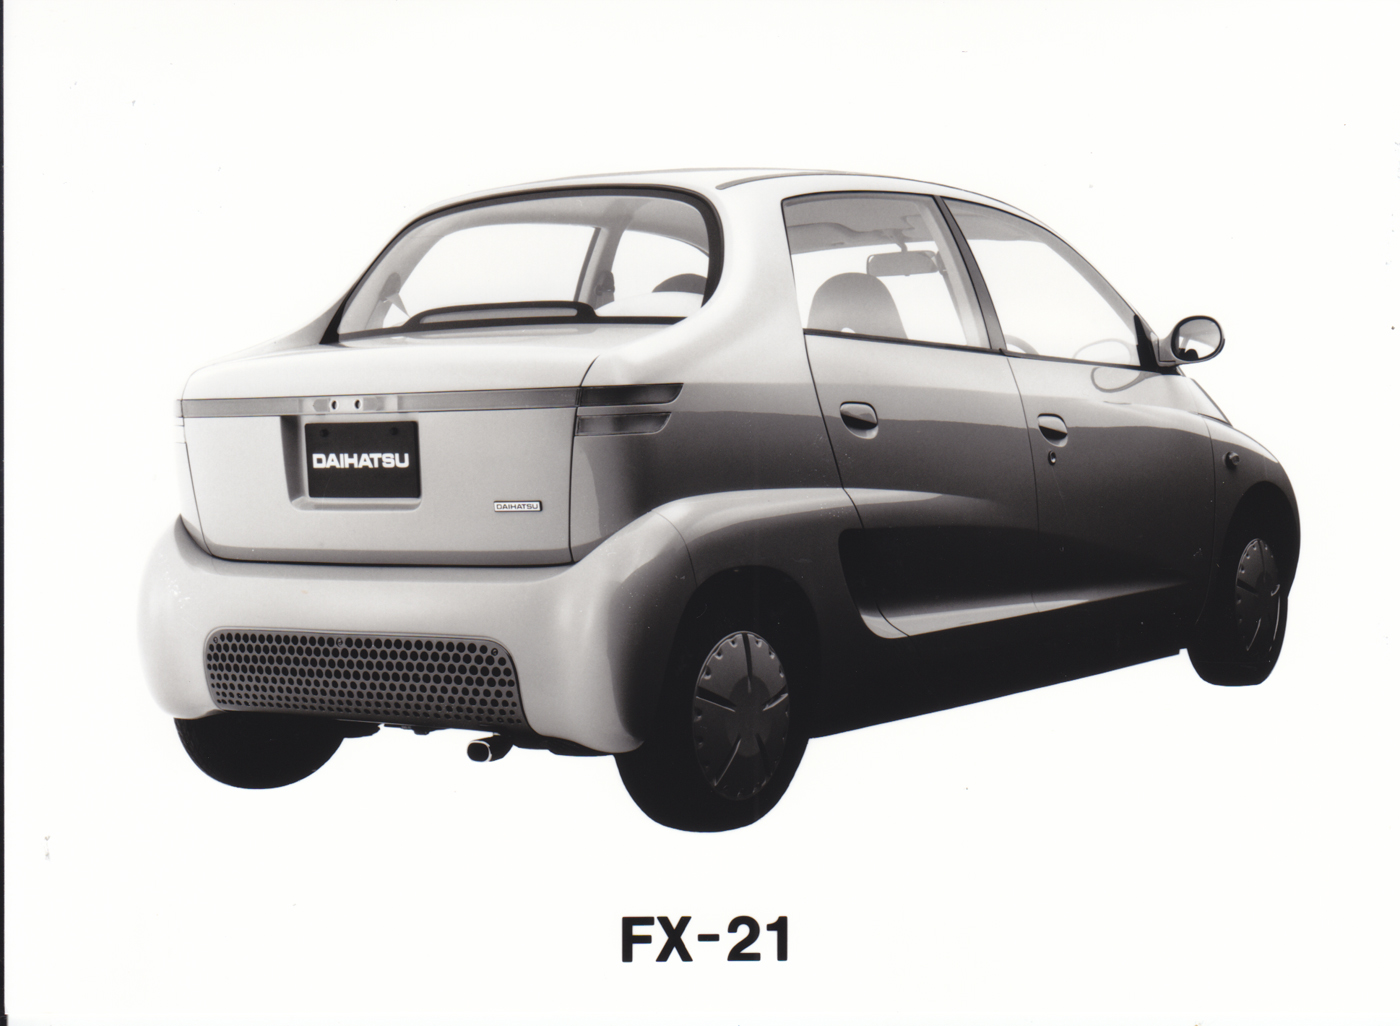 Daihatsu FX-21 Concept, 1995